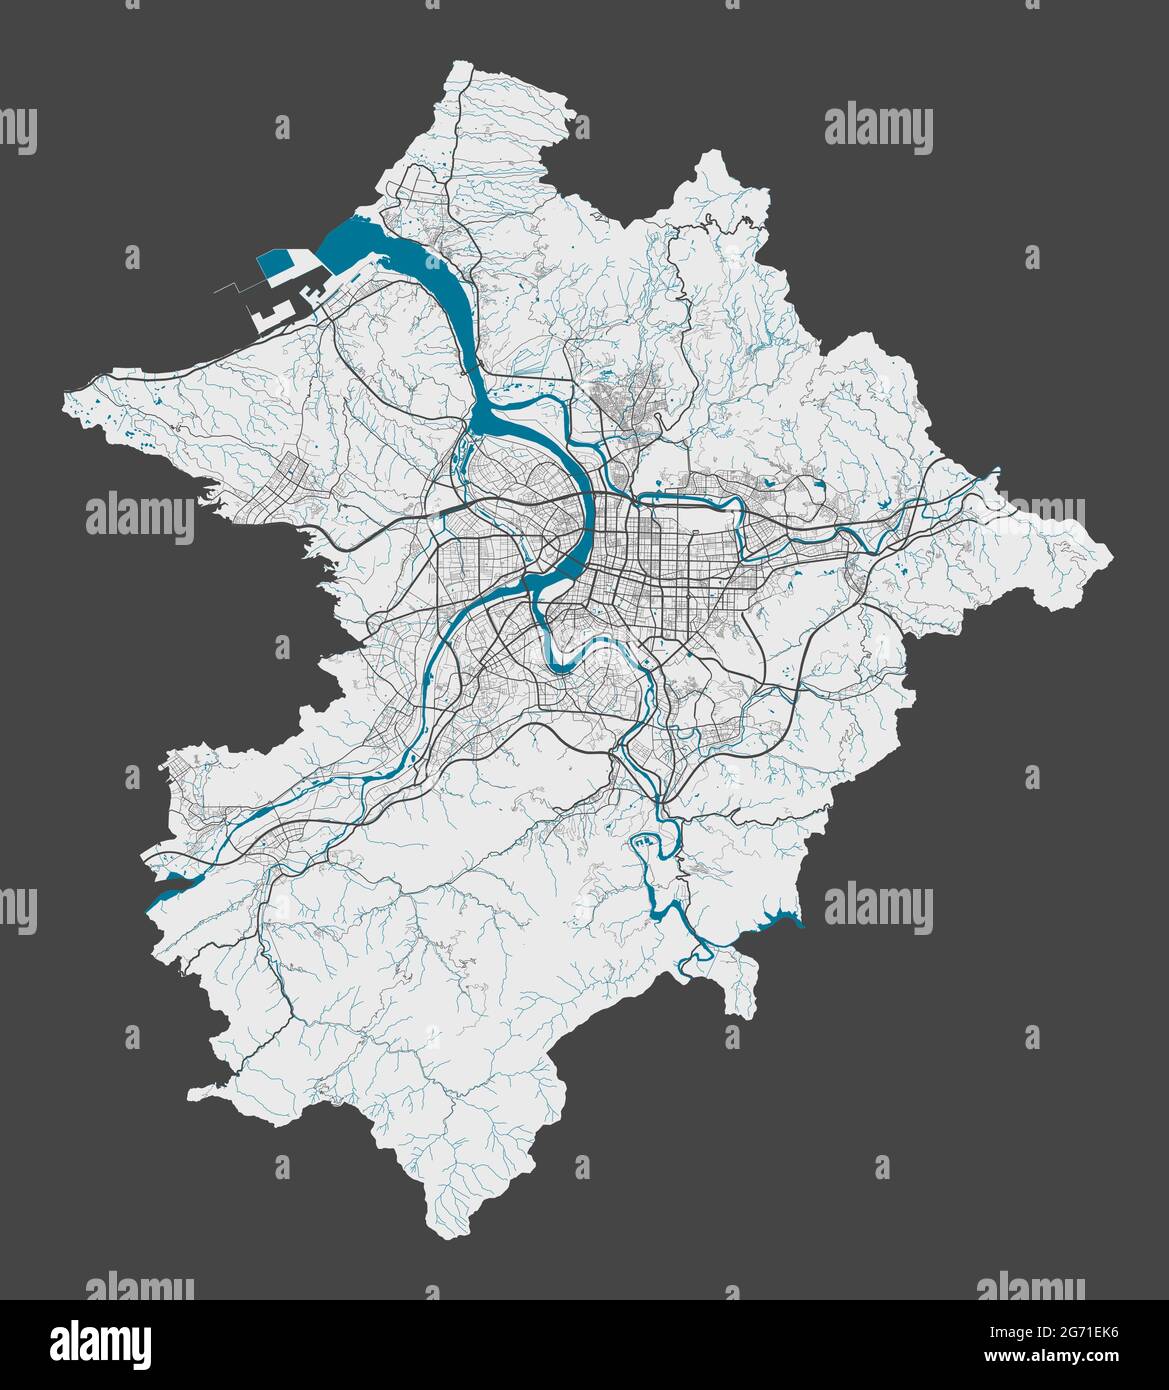 Karte von Taipeh. Detaillierte Karte des Verwaltungsgebiets der Stadt Taipei. Stadtbild-Panorama. Lizenzfreie Vektorgrafik. Übersichtskarte mit Autobahnen, Straßen, Stock Vektor